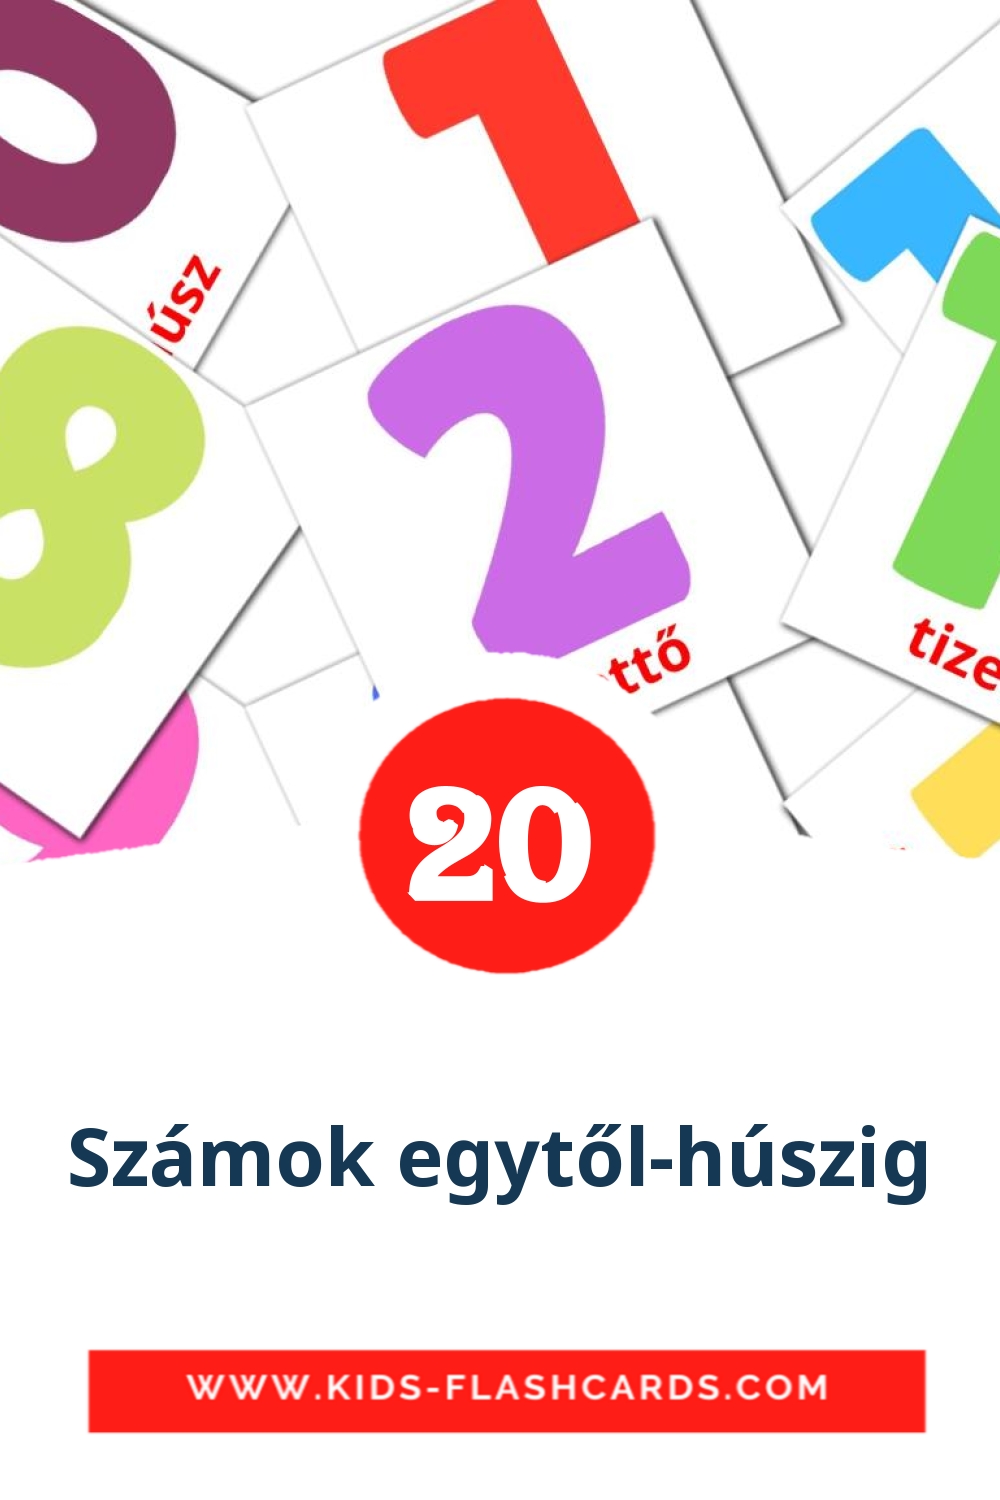 20 tarjetas didacticas de Számok egytől-húszig para el jardín de infancia en húngaro